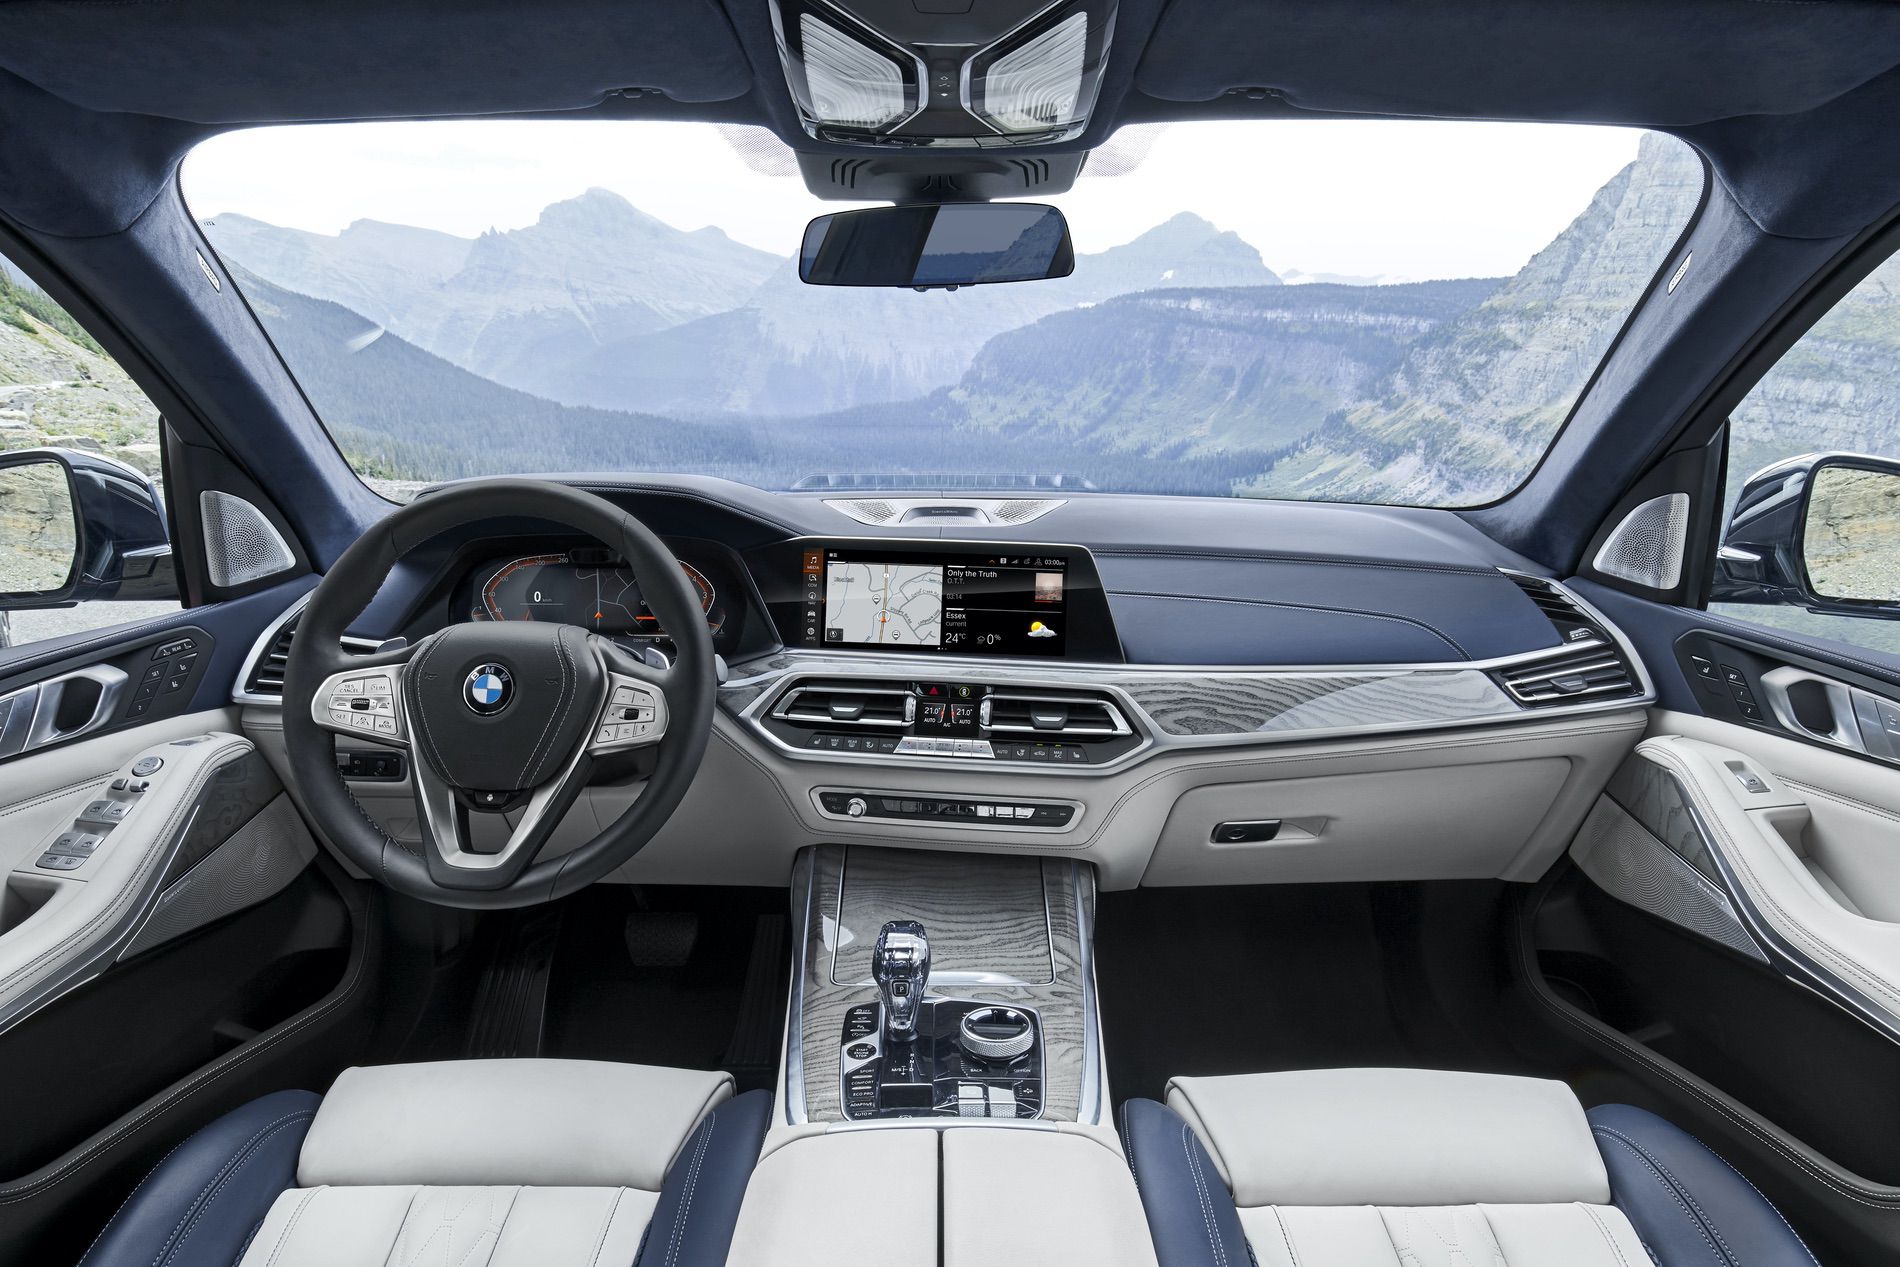 BMW-X7-interior-12.jpg